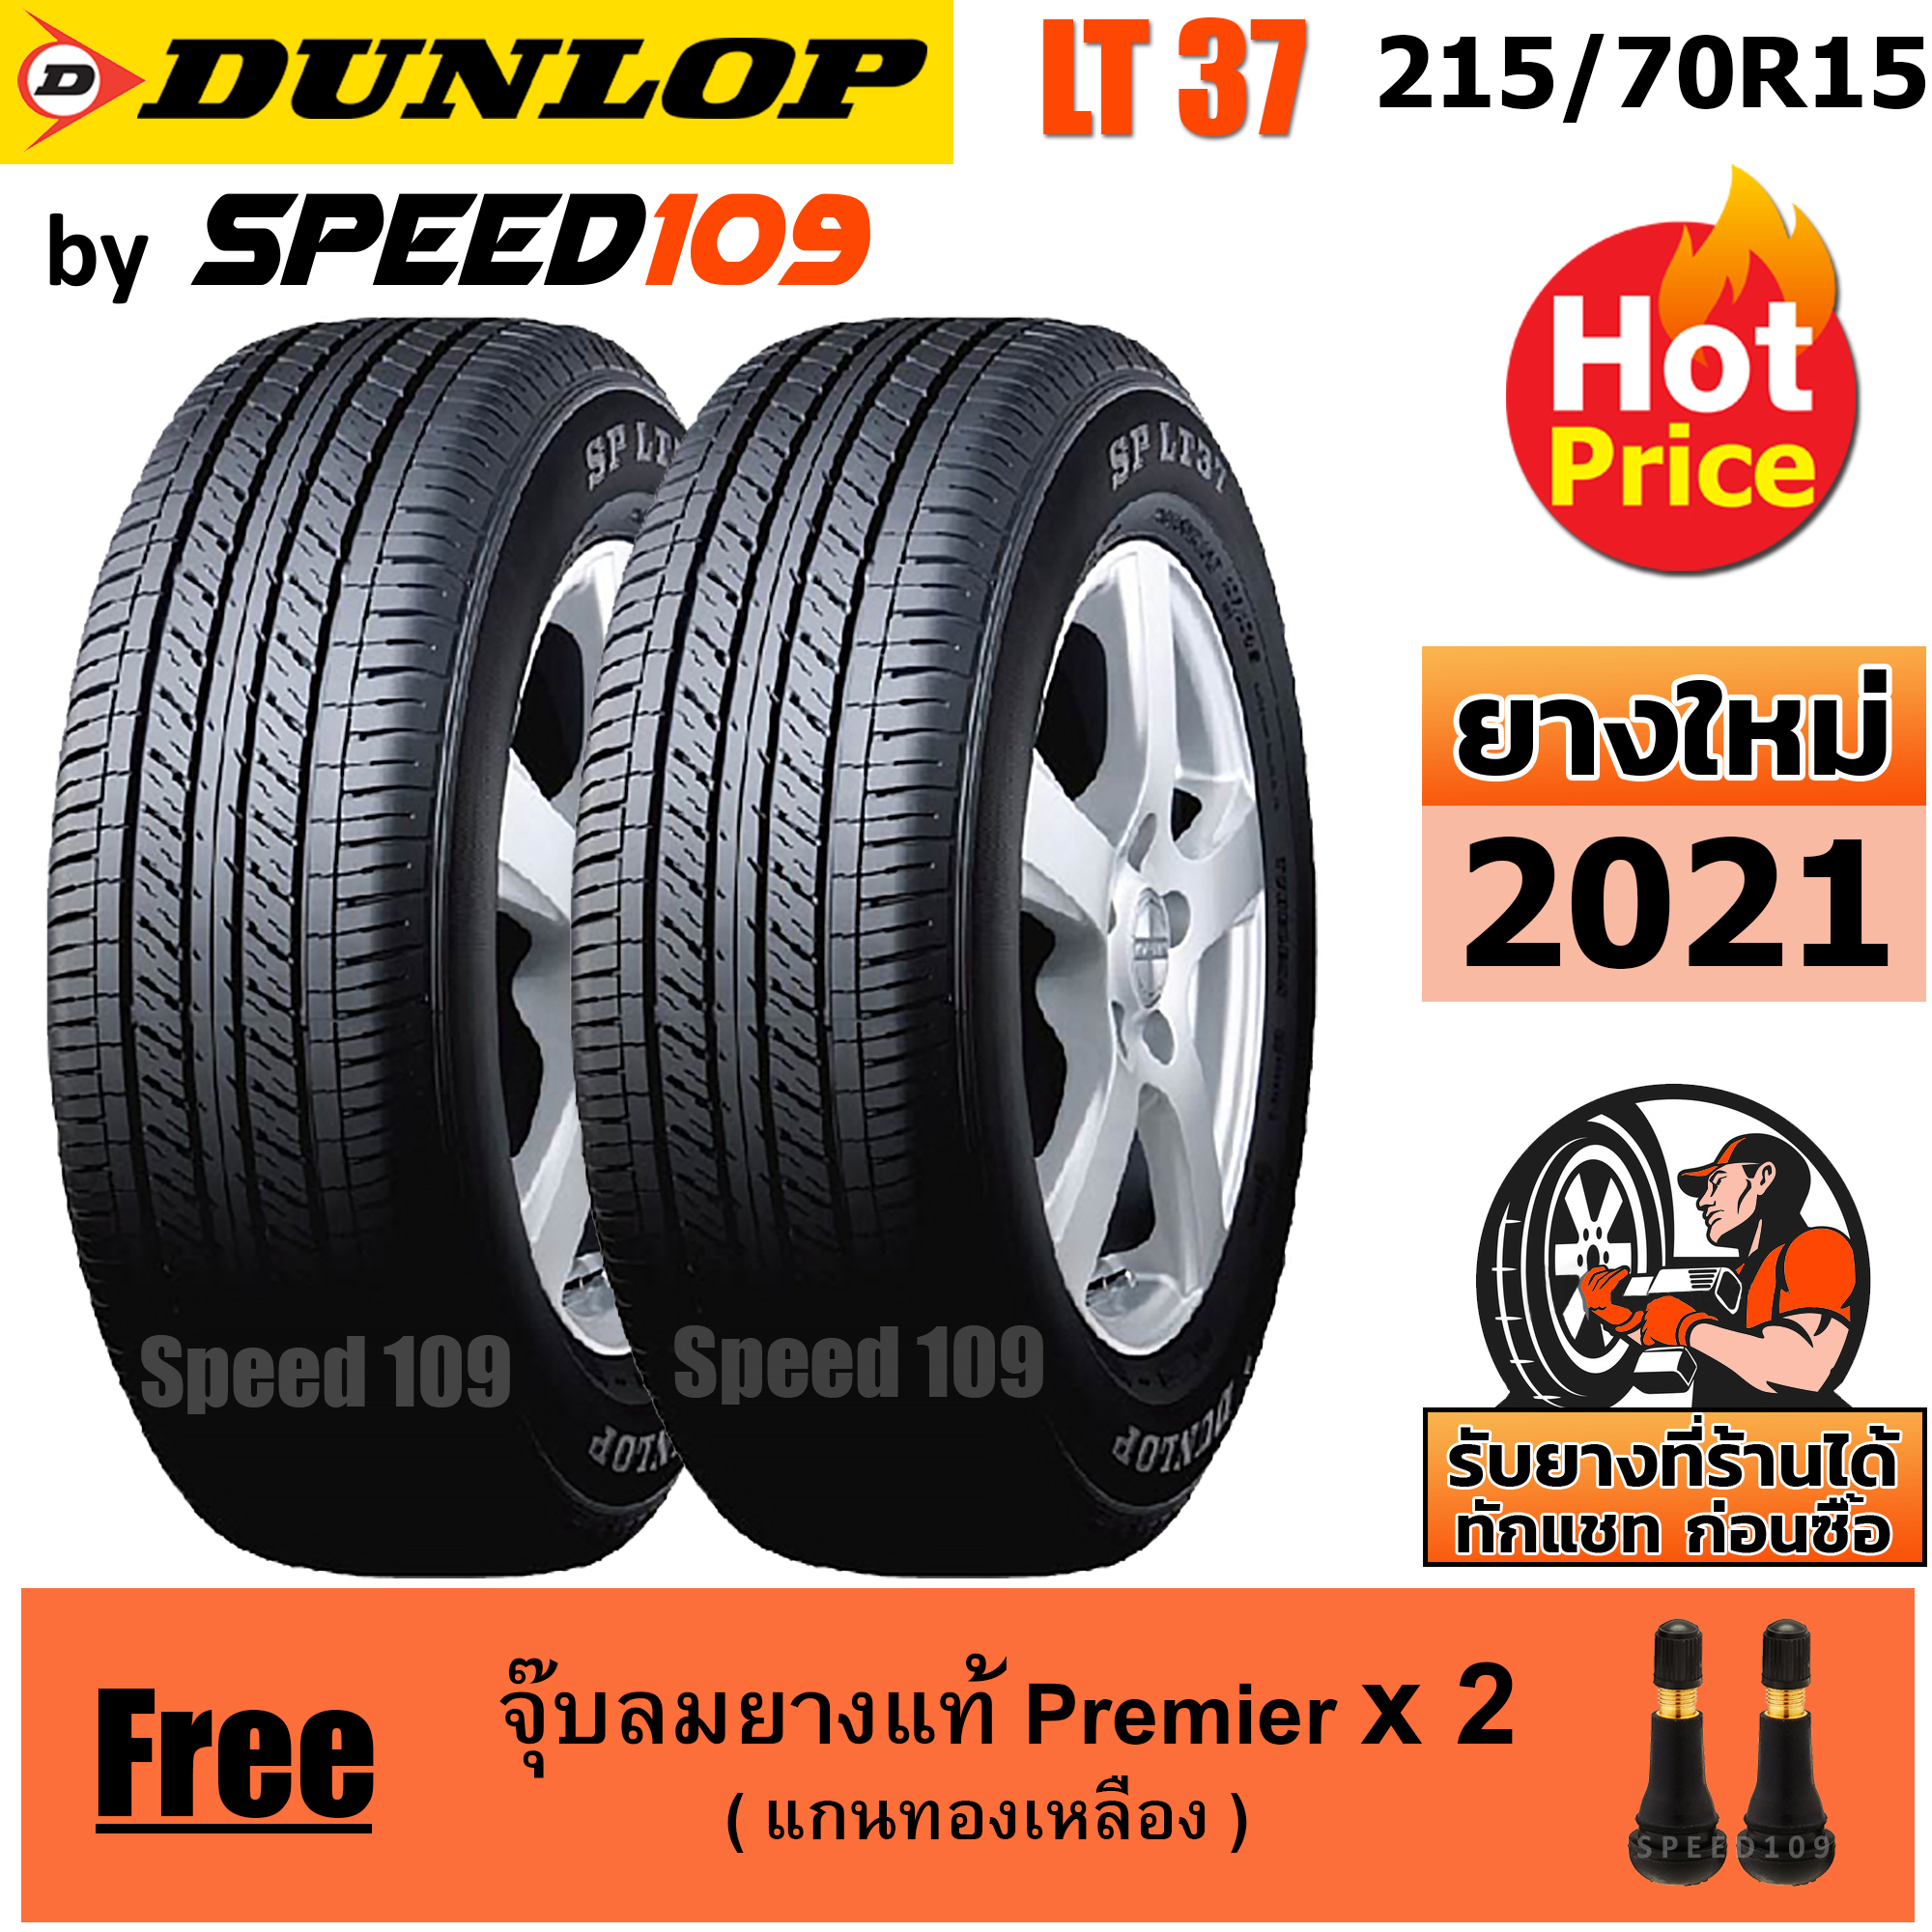 DUNLOP ยางรถยนต์ ขอบ 15 ขนาด 215/70R15 รุ่น SP LT37 - 2 เส้น (ปี 2021)